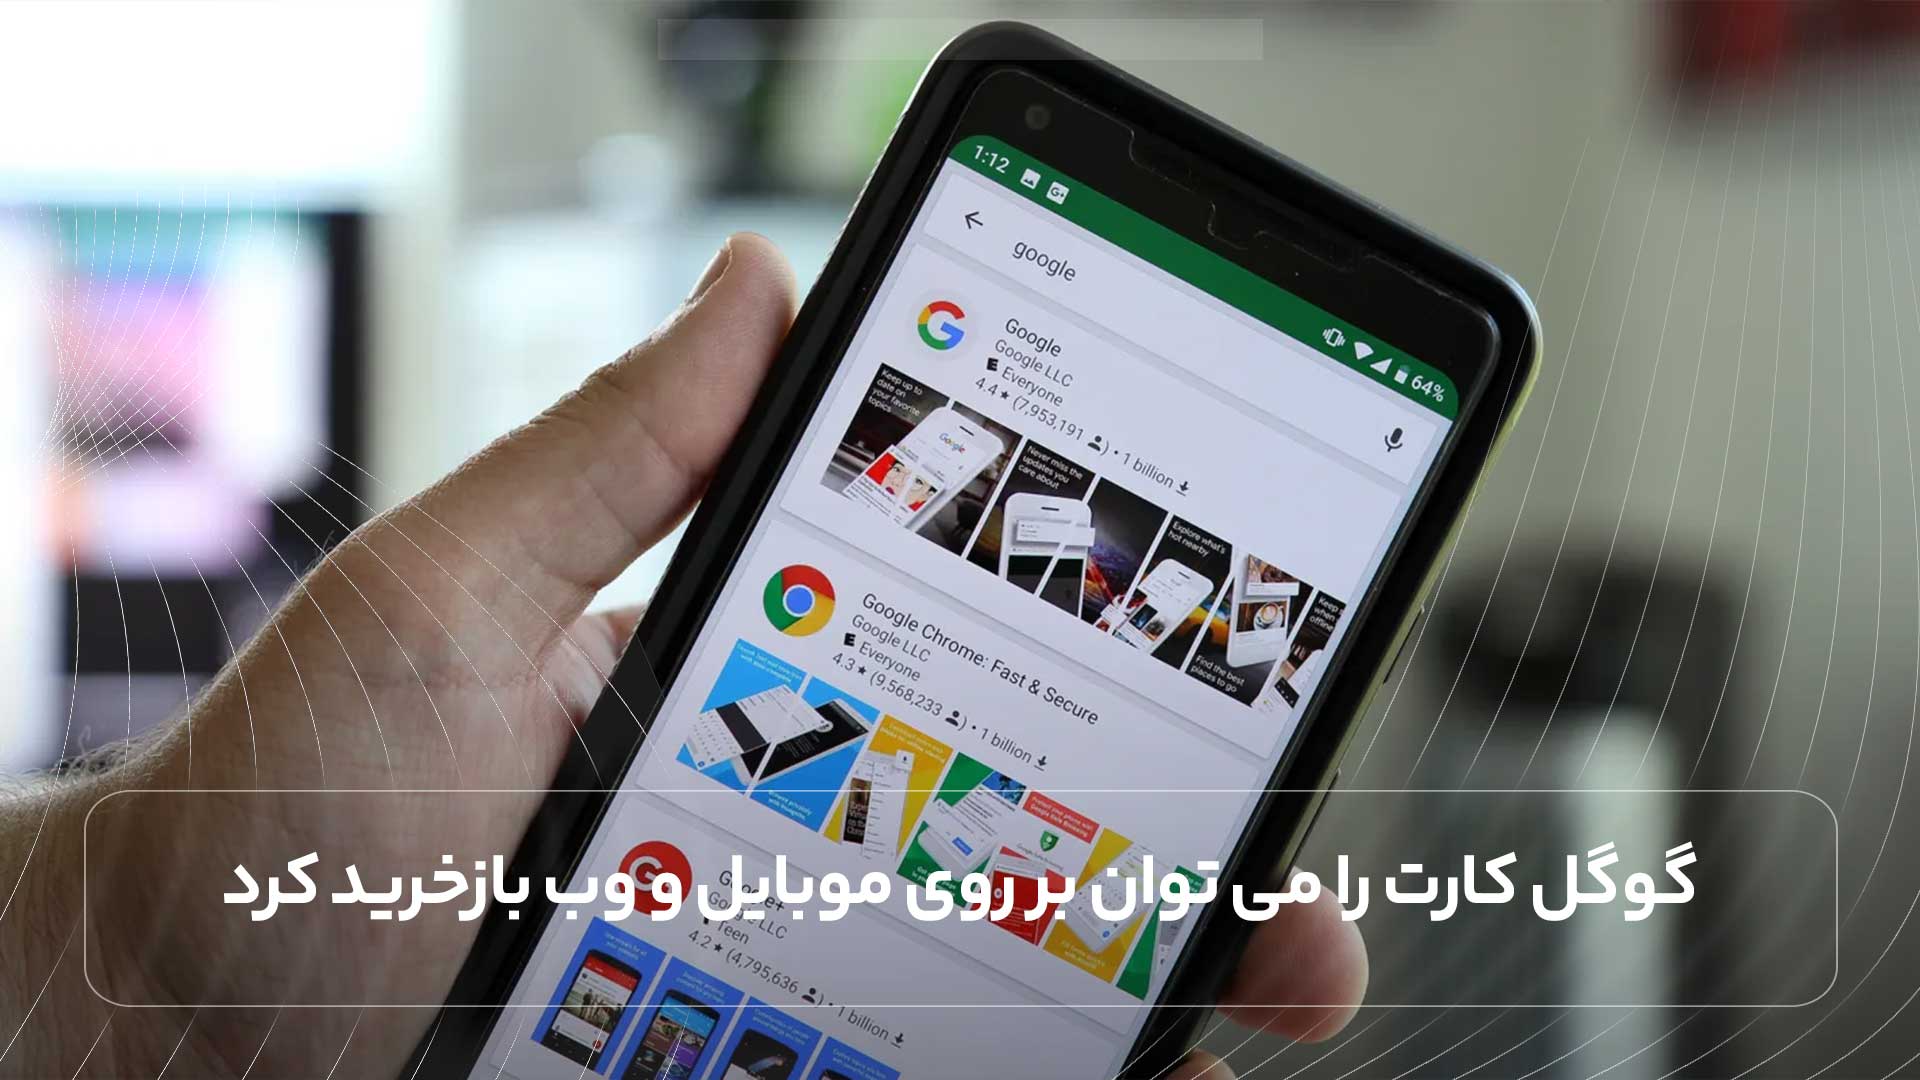 گوگل کارت را می توان بر روی موبایل و وب بازخرید کرد.